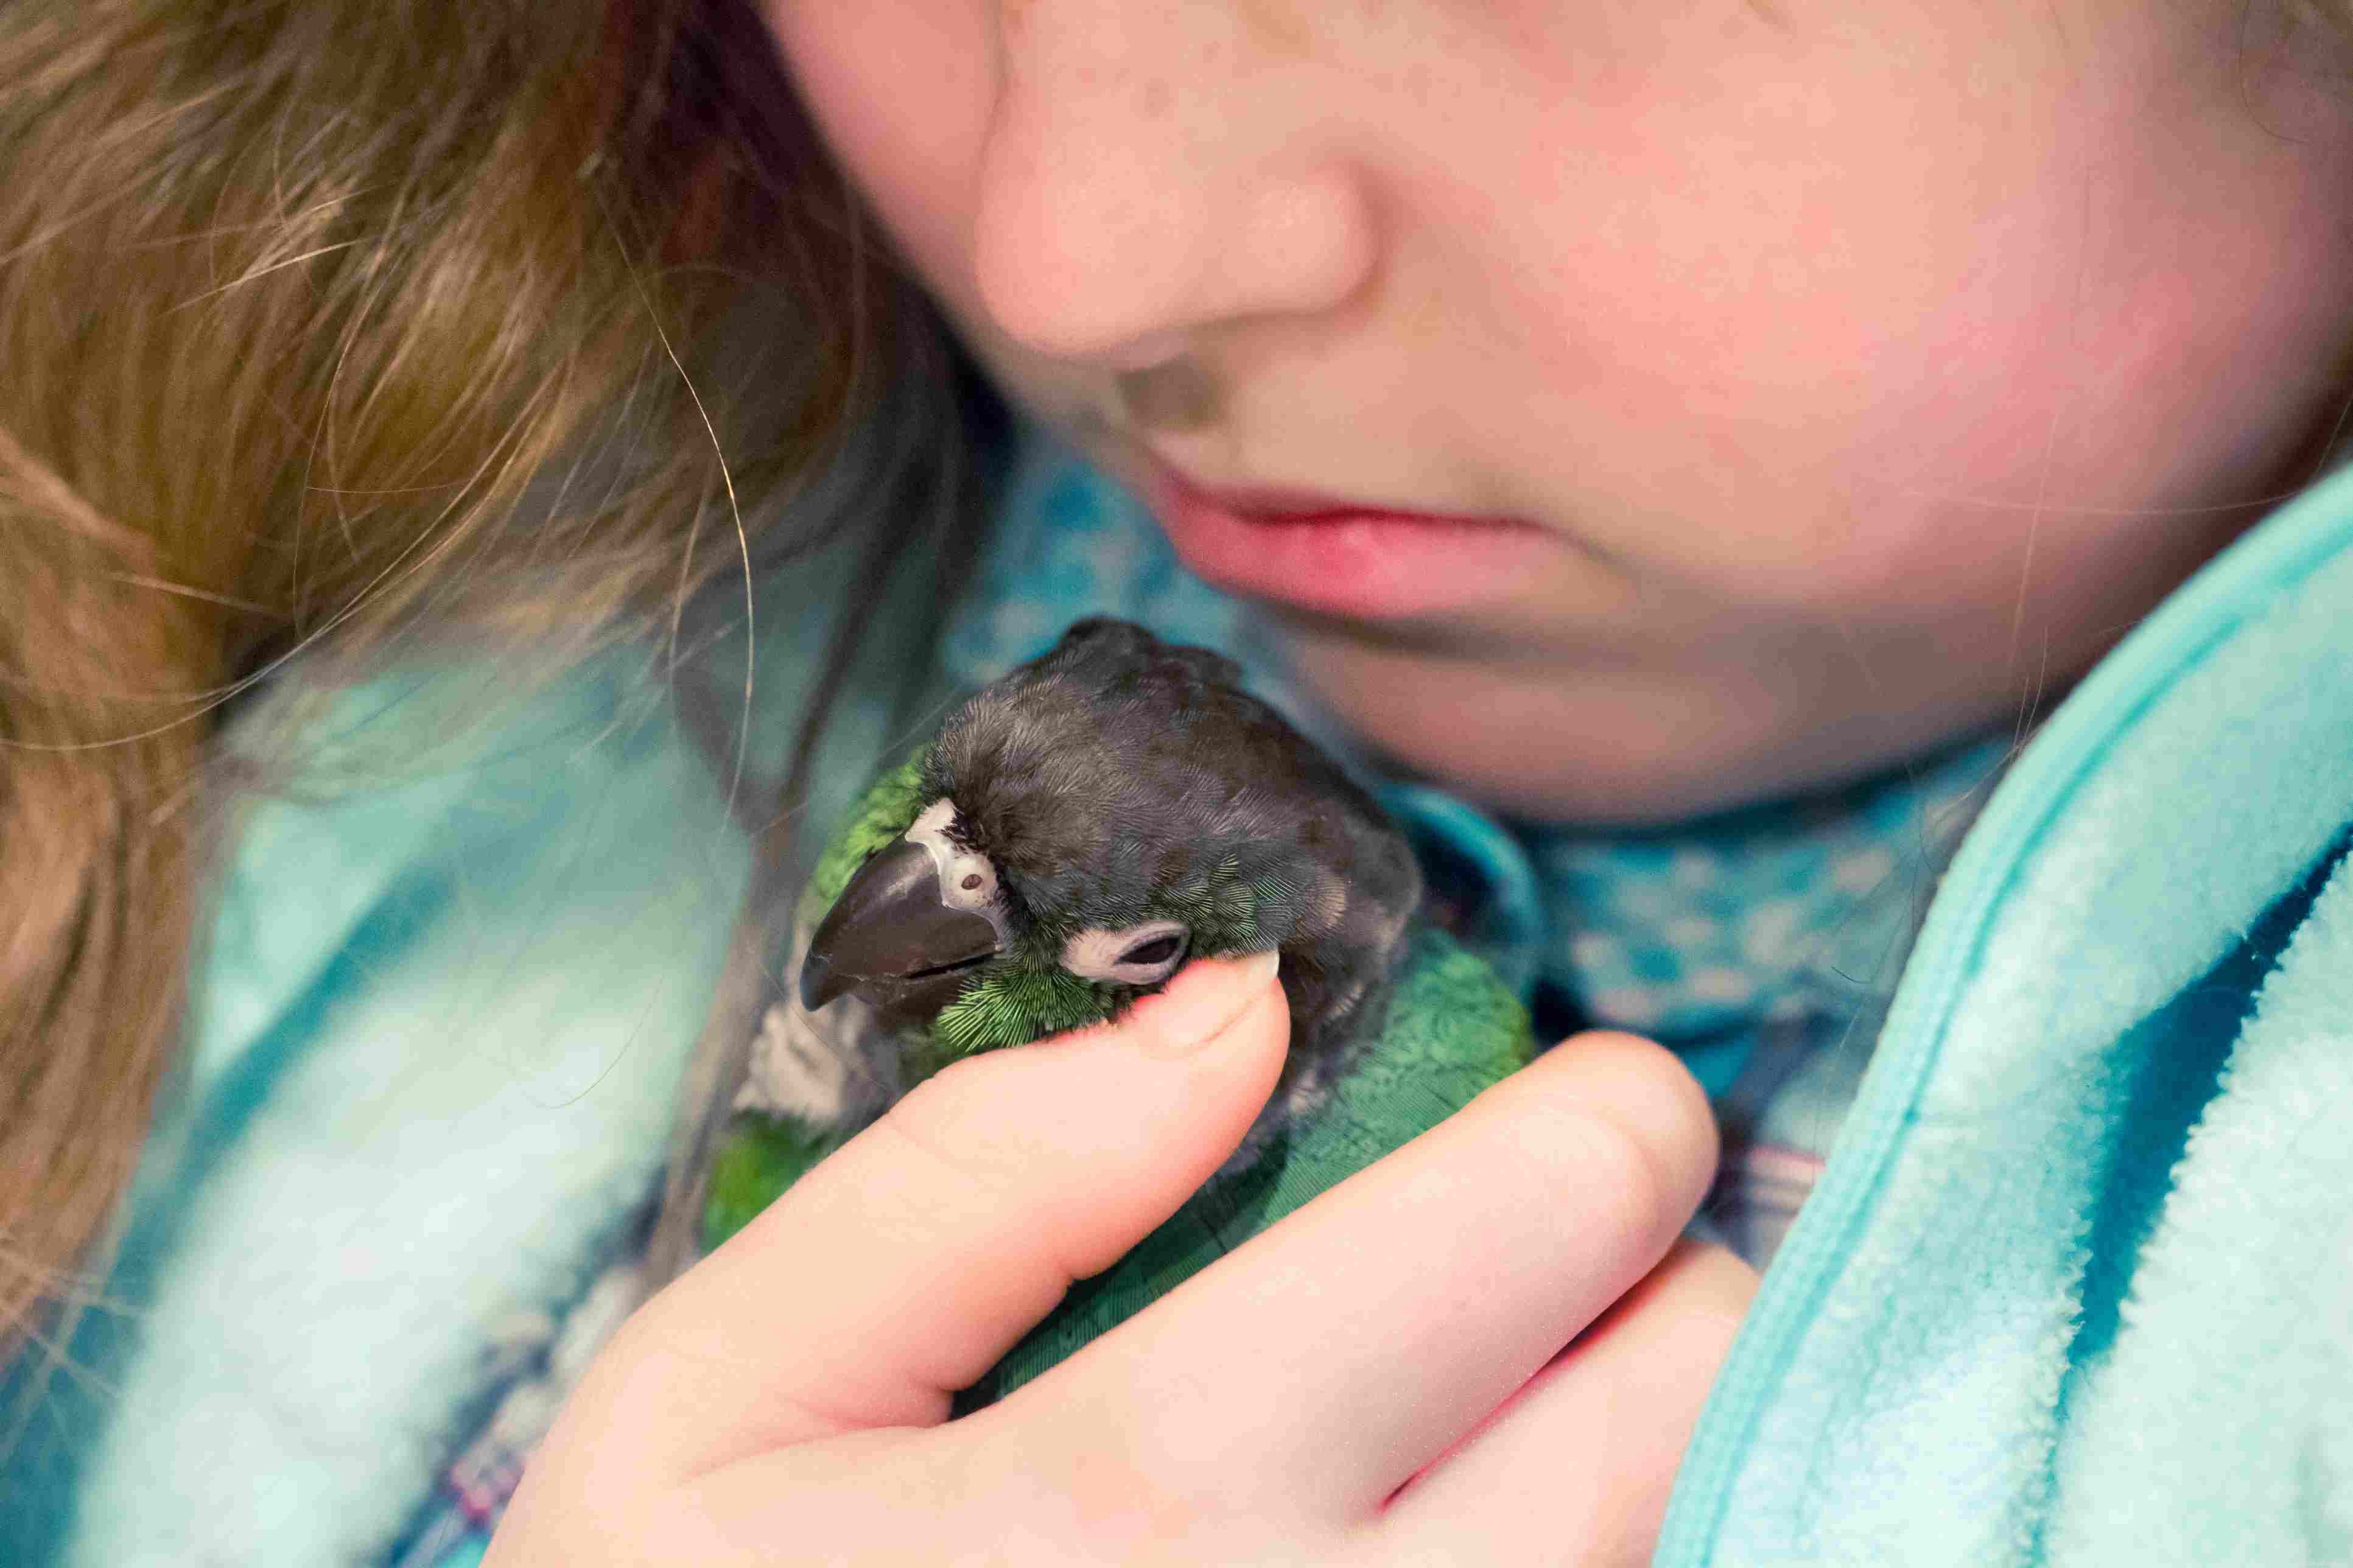 자녀에게 애완용 새를 사주어야 합니까?